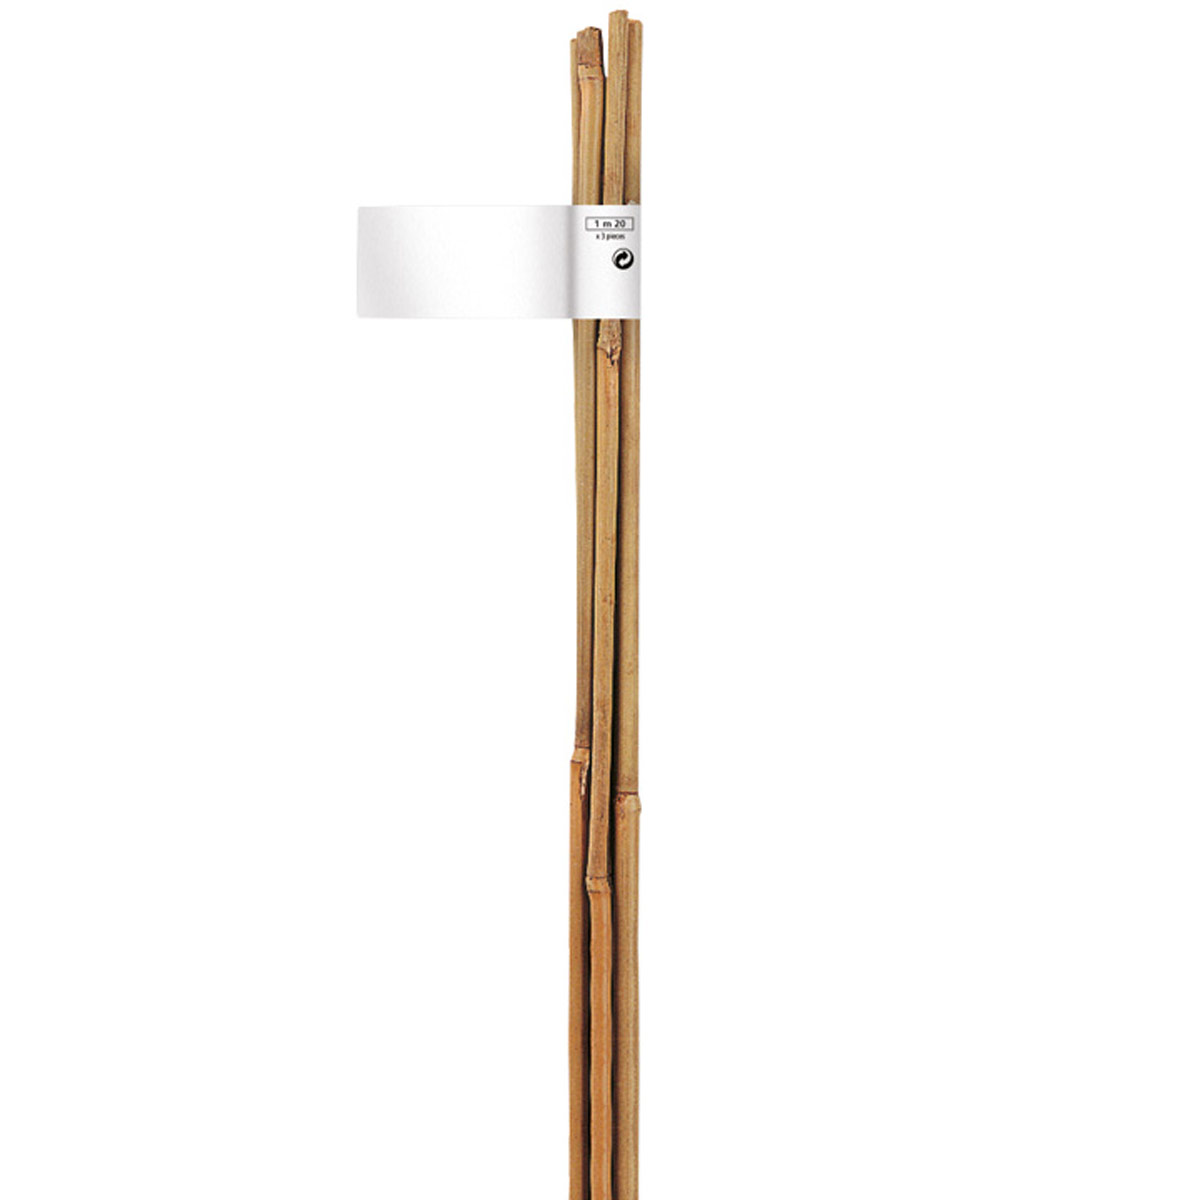 Nortene Bamboo bambusz termesztő karó  (2 db karó / köteg), Ø 10-12 mm x M. 1,50 m